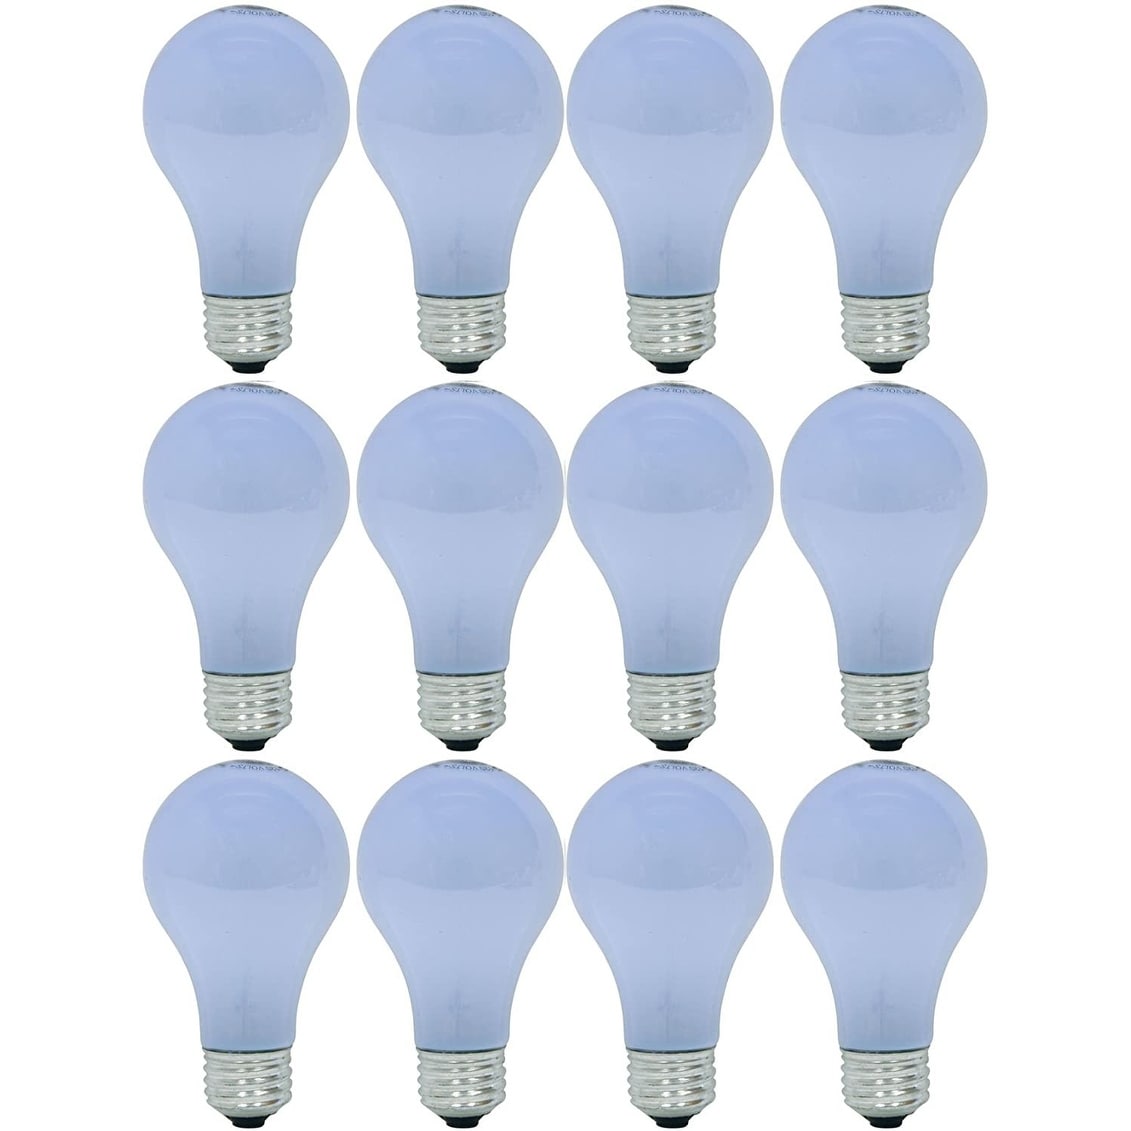 GE Lighting Reveal HD Halogen Light Bulbs, A19 Enhance Spectrum (40 Replacement), 325 Lumen, Medium Base, 4-Pack - 12 Pack - Overstock - 34483874